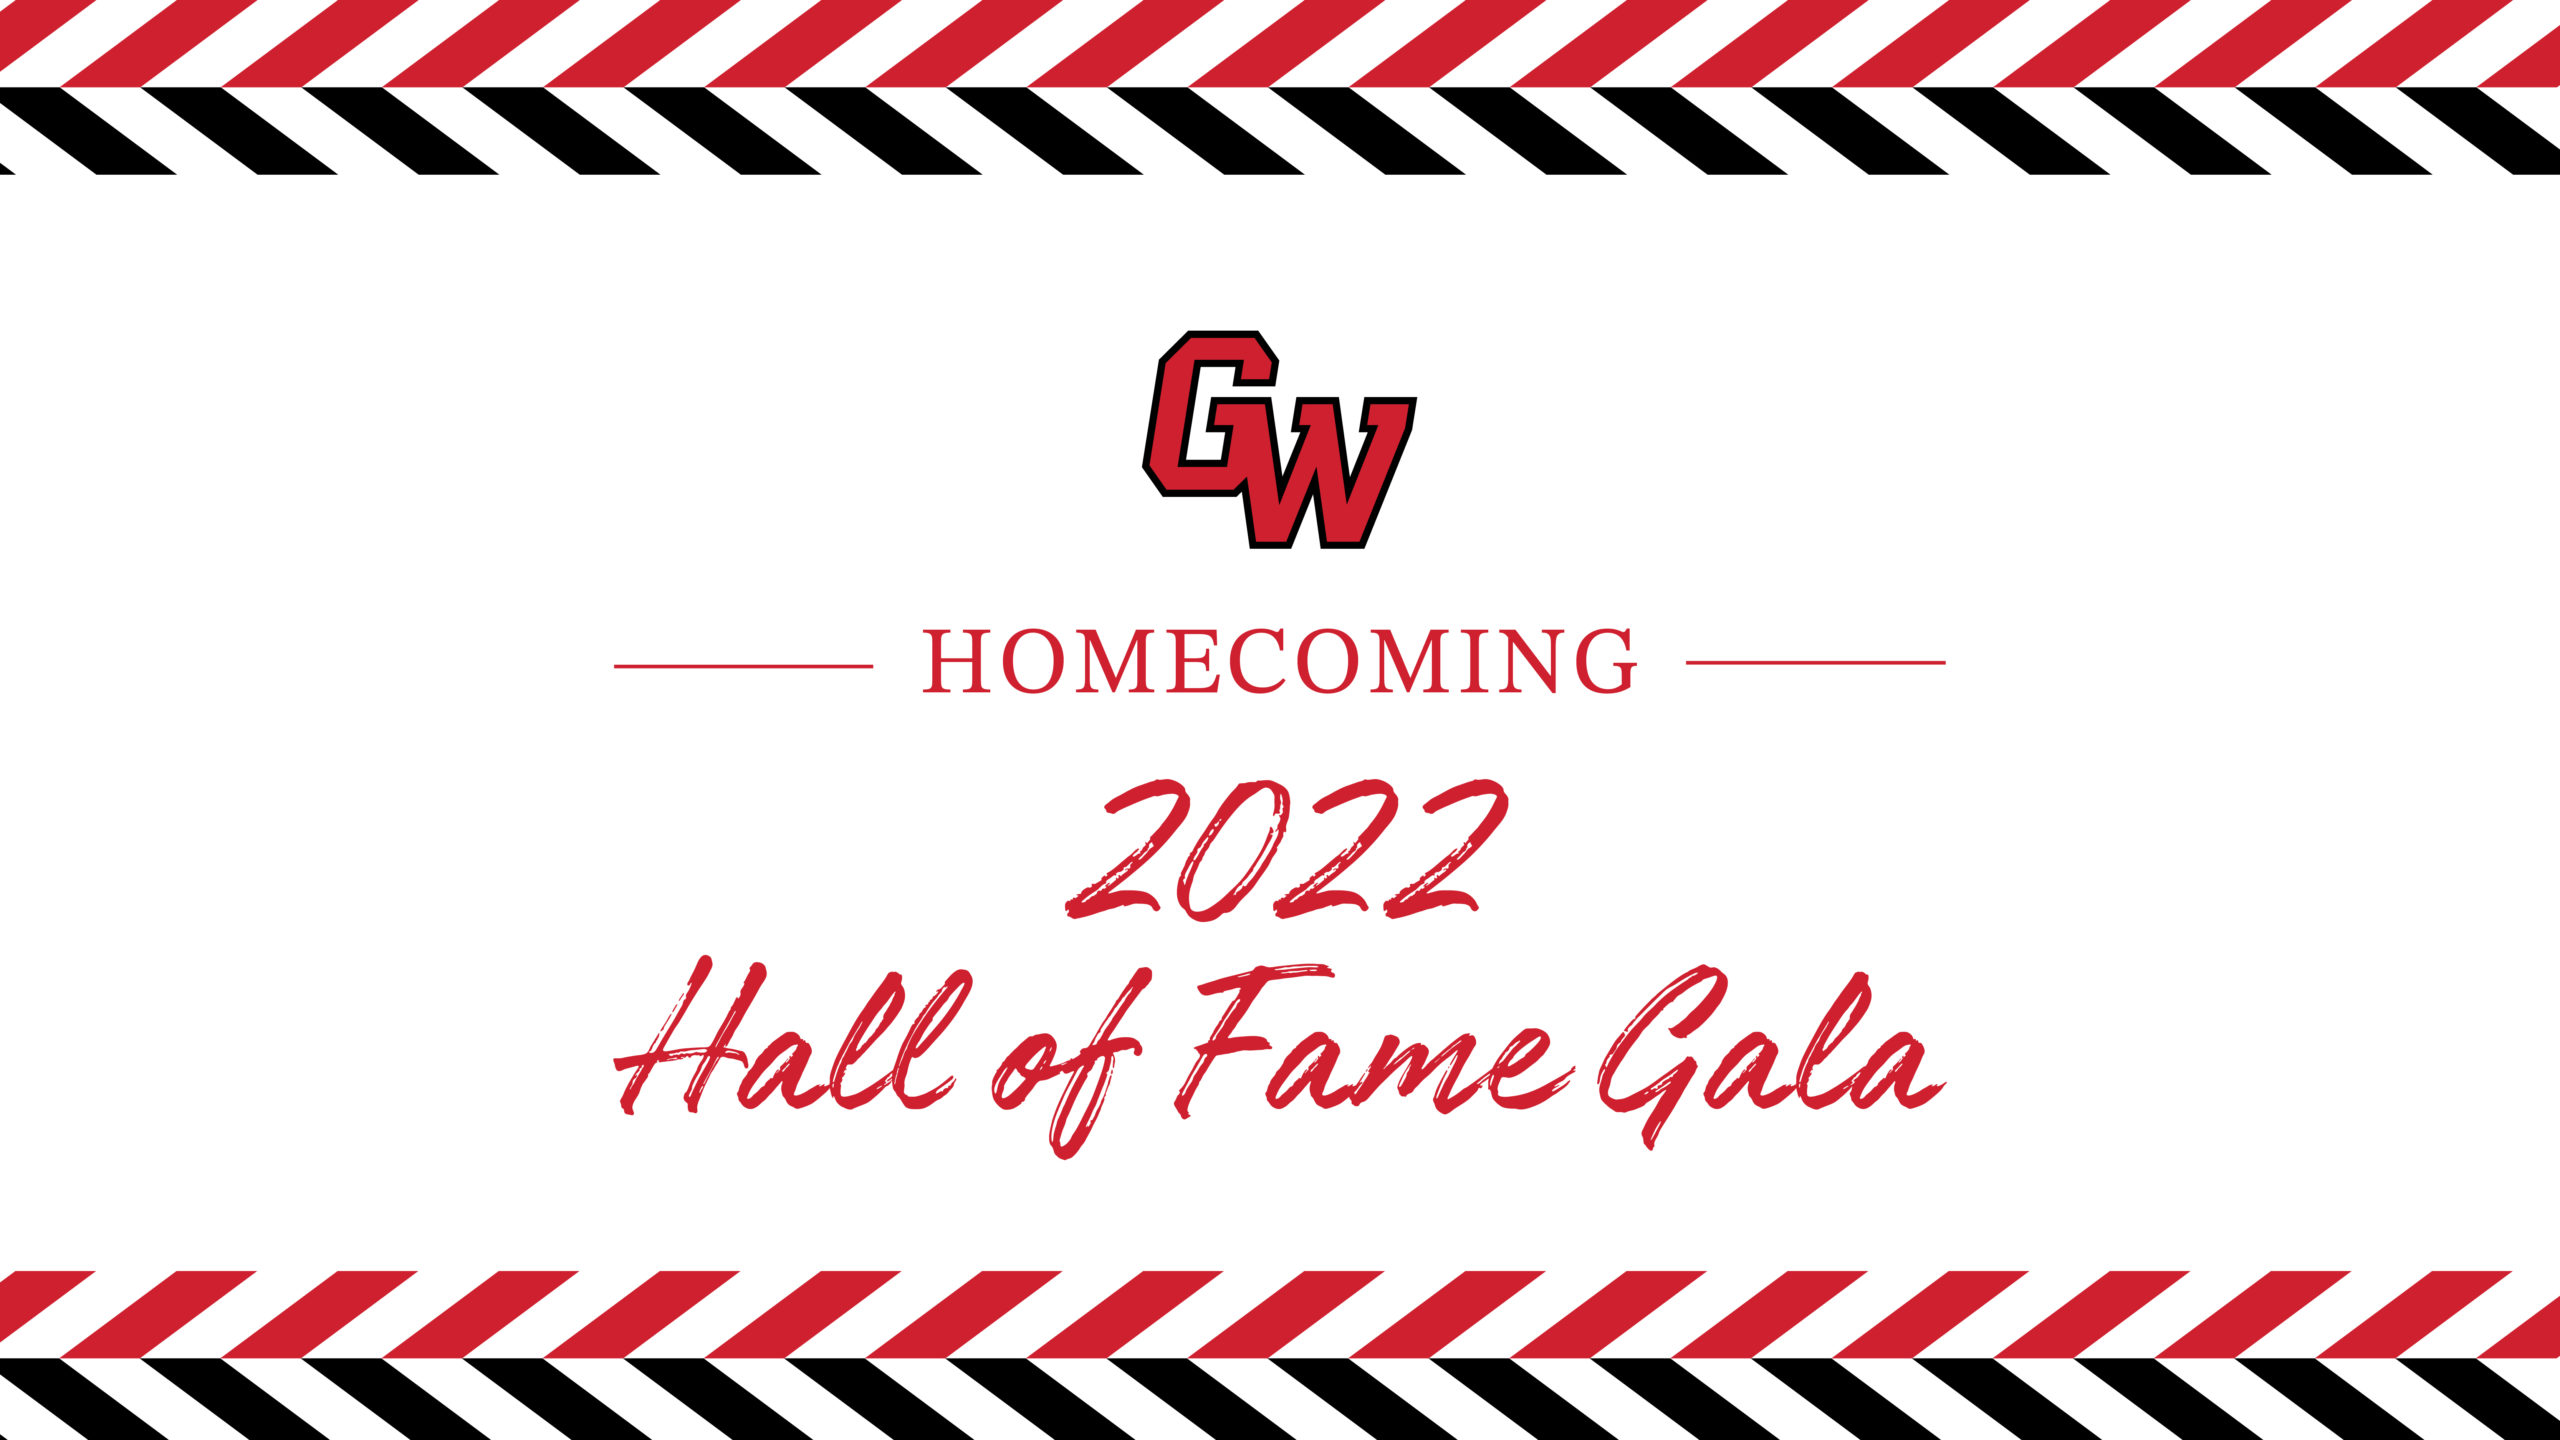 Hall of Fame Gala 2022